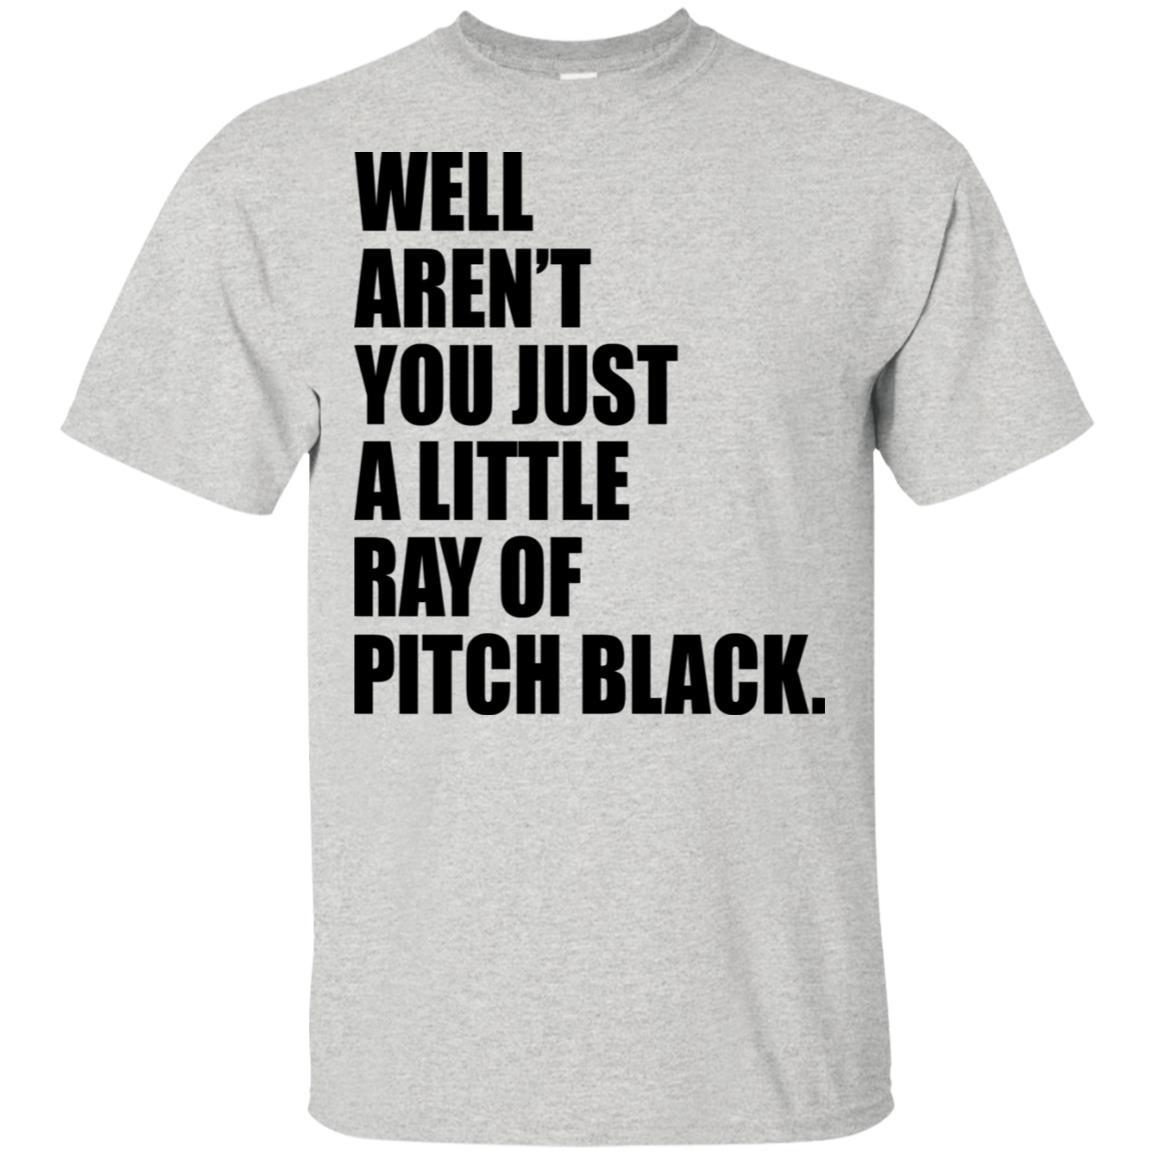 pitch black shirt